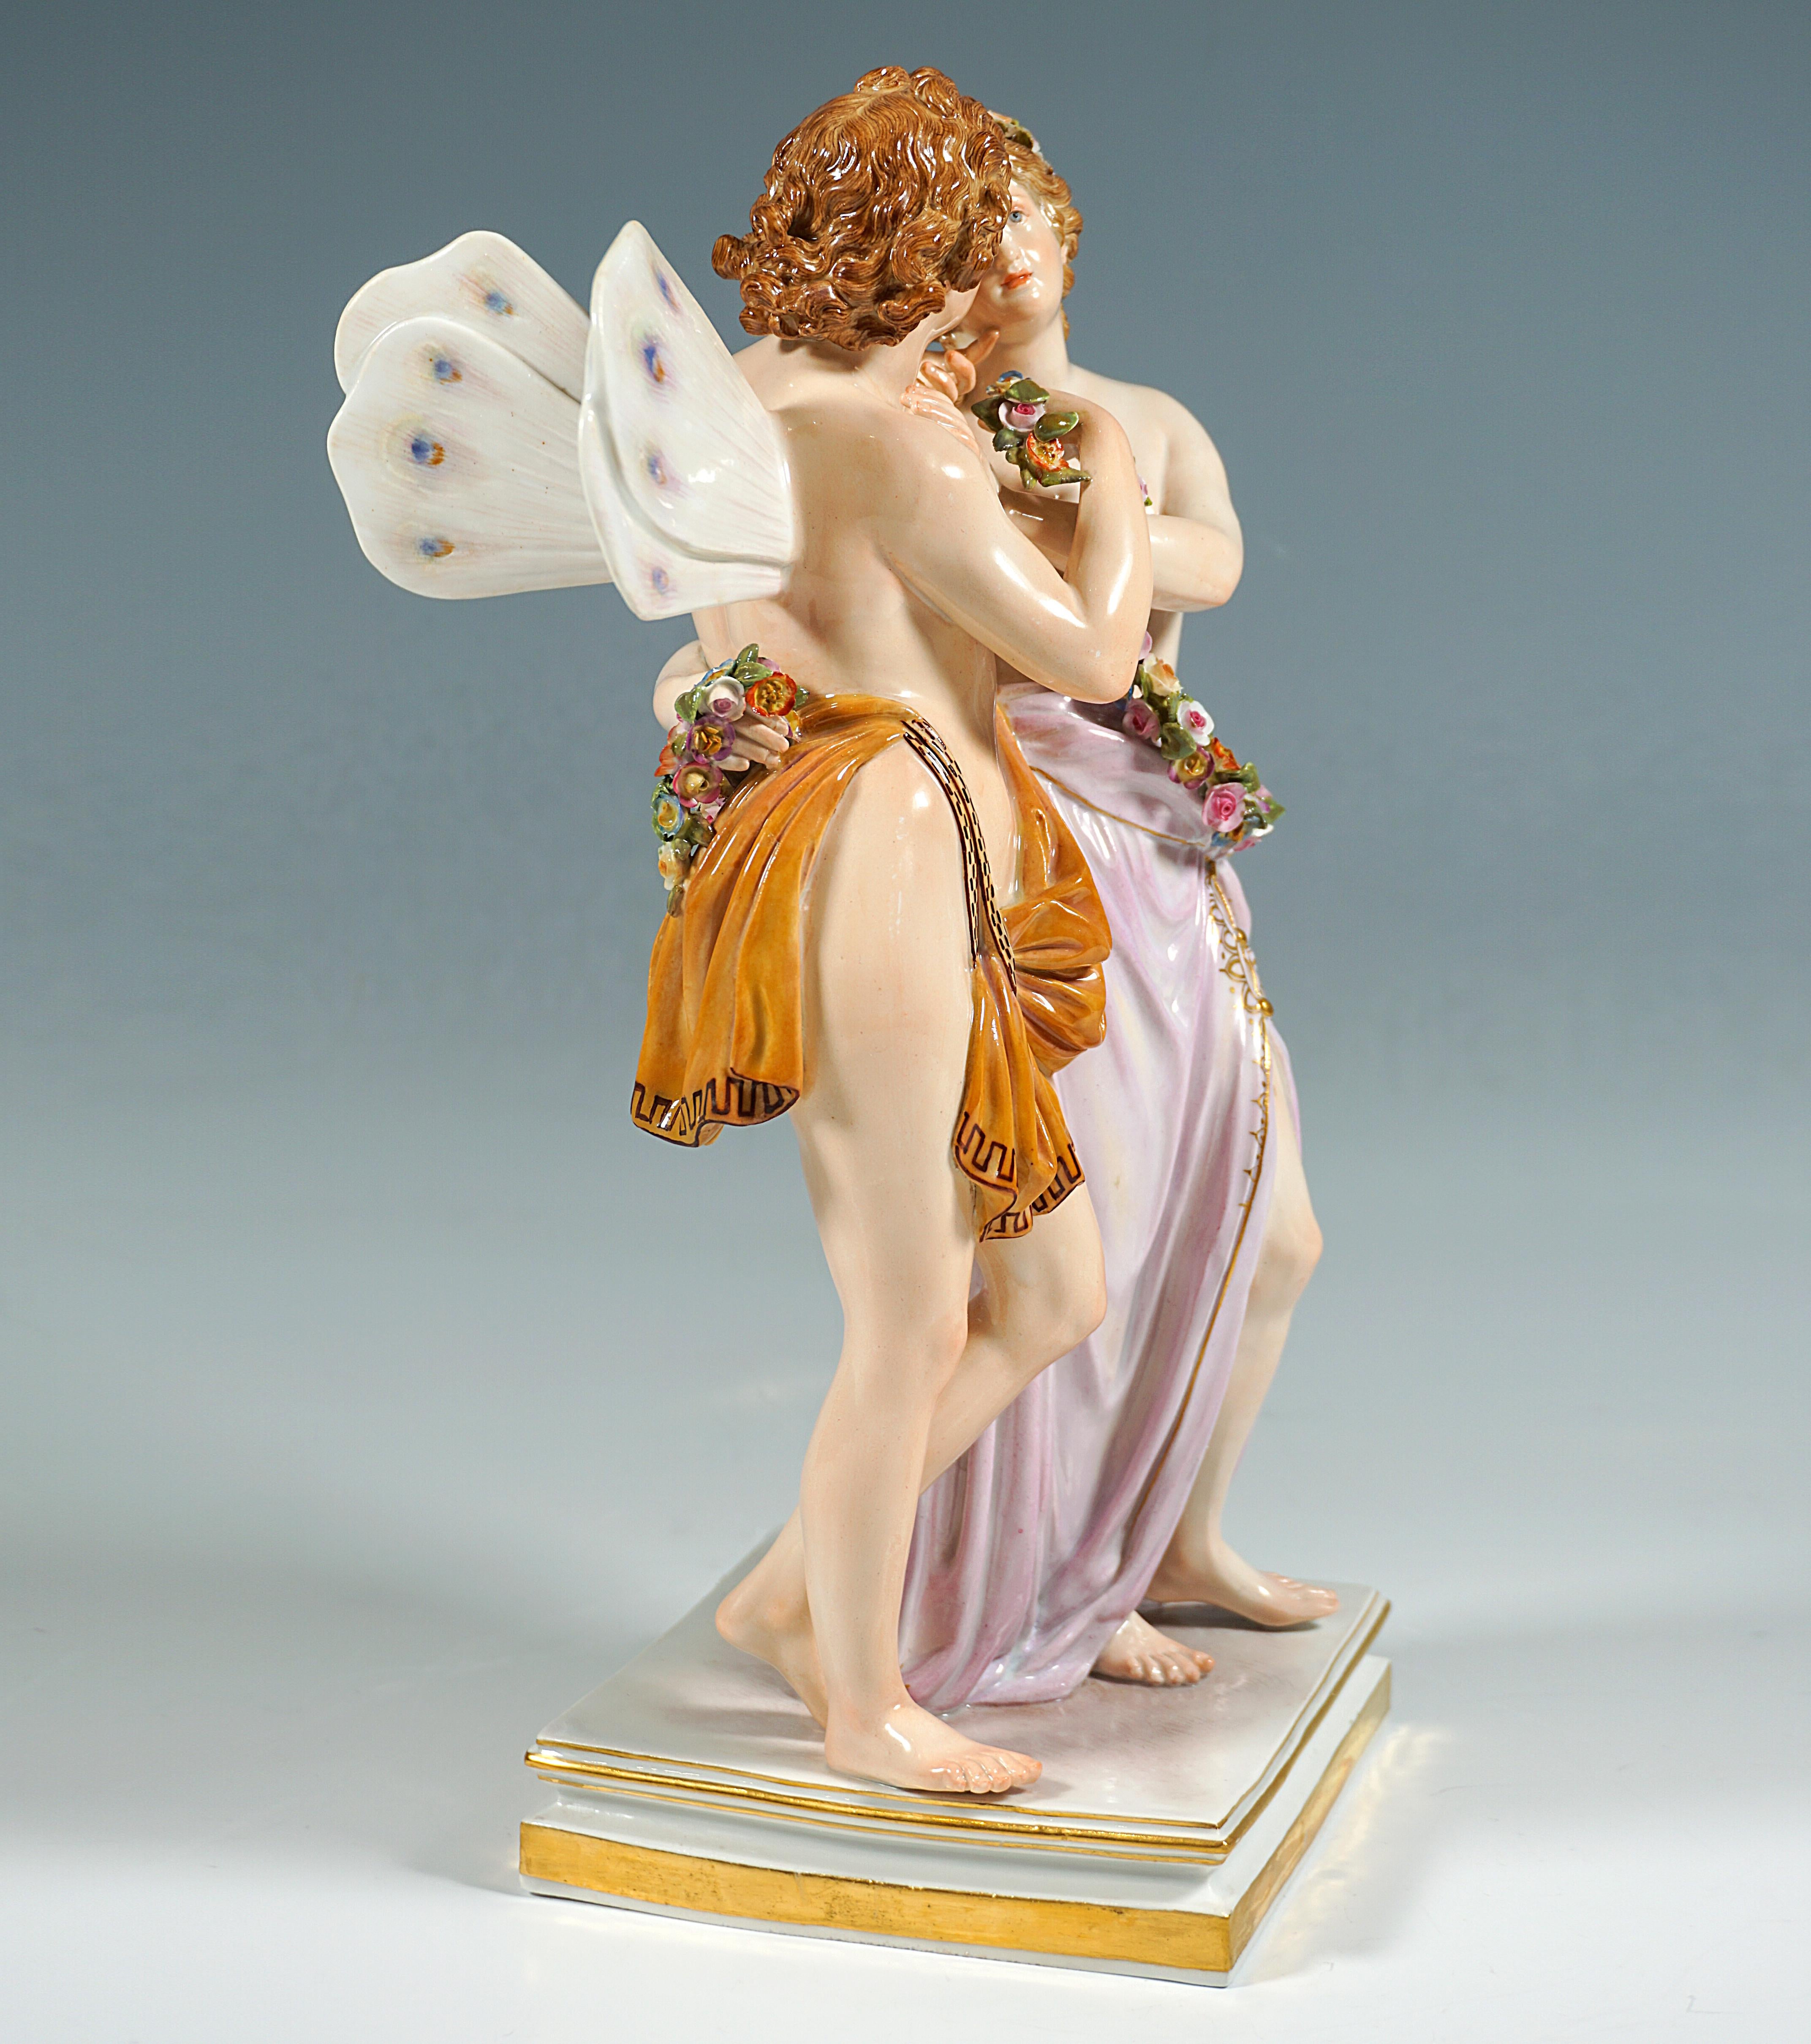 Excellent groupe de figurines Meissen du 19e siècle :
Zéphyr, le dieu du vent doux, et Flore, déesse de la végétation et des fleurs, enveloppés dans des tissus, se tiennent côte à côte, Flore plaçant une longue guirlande de fleurs autour des hanches